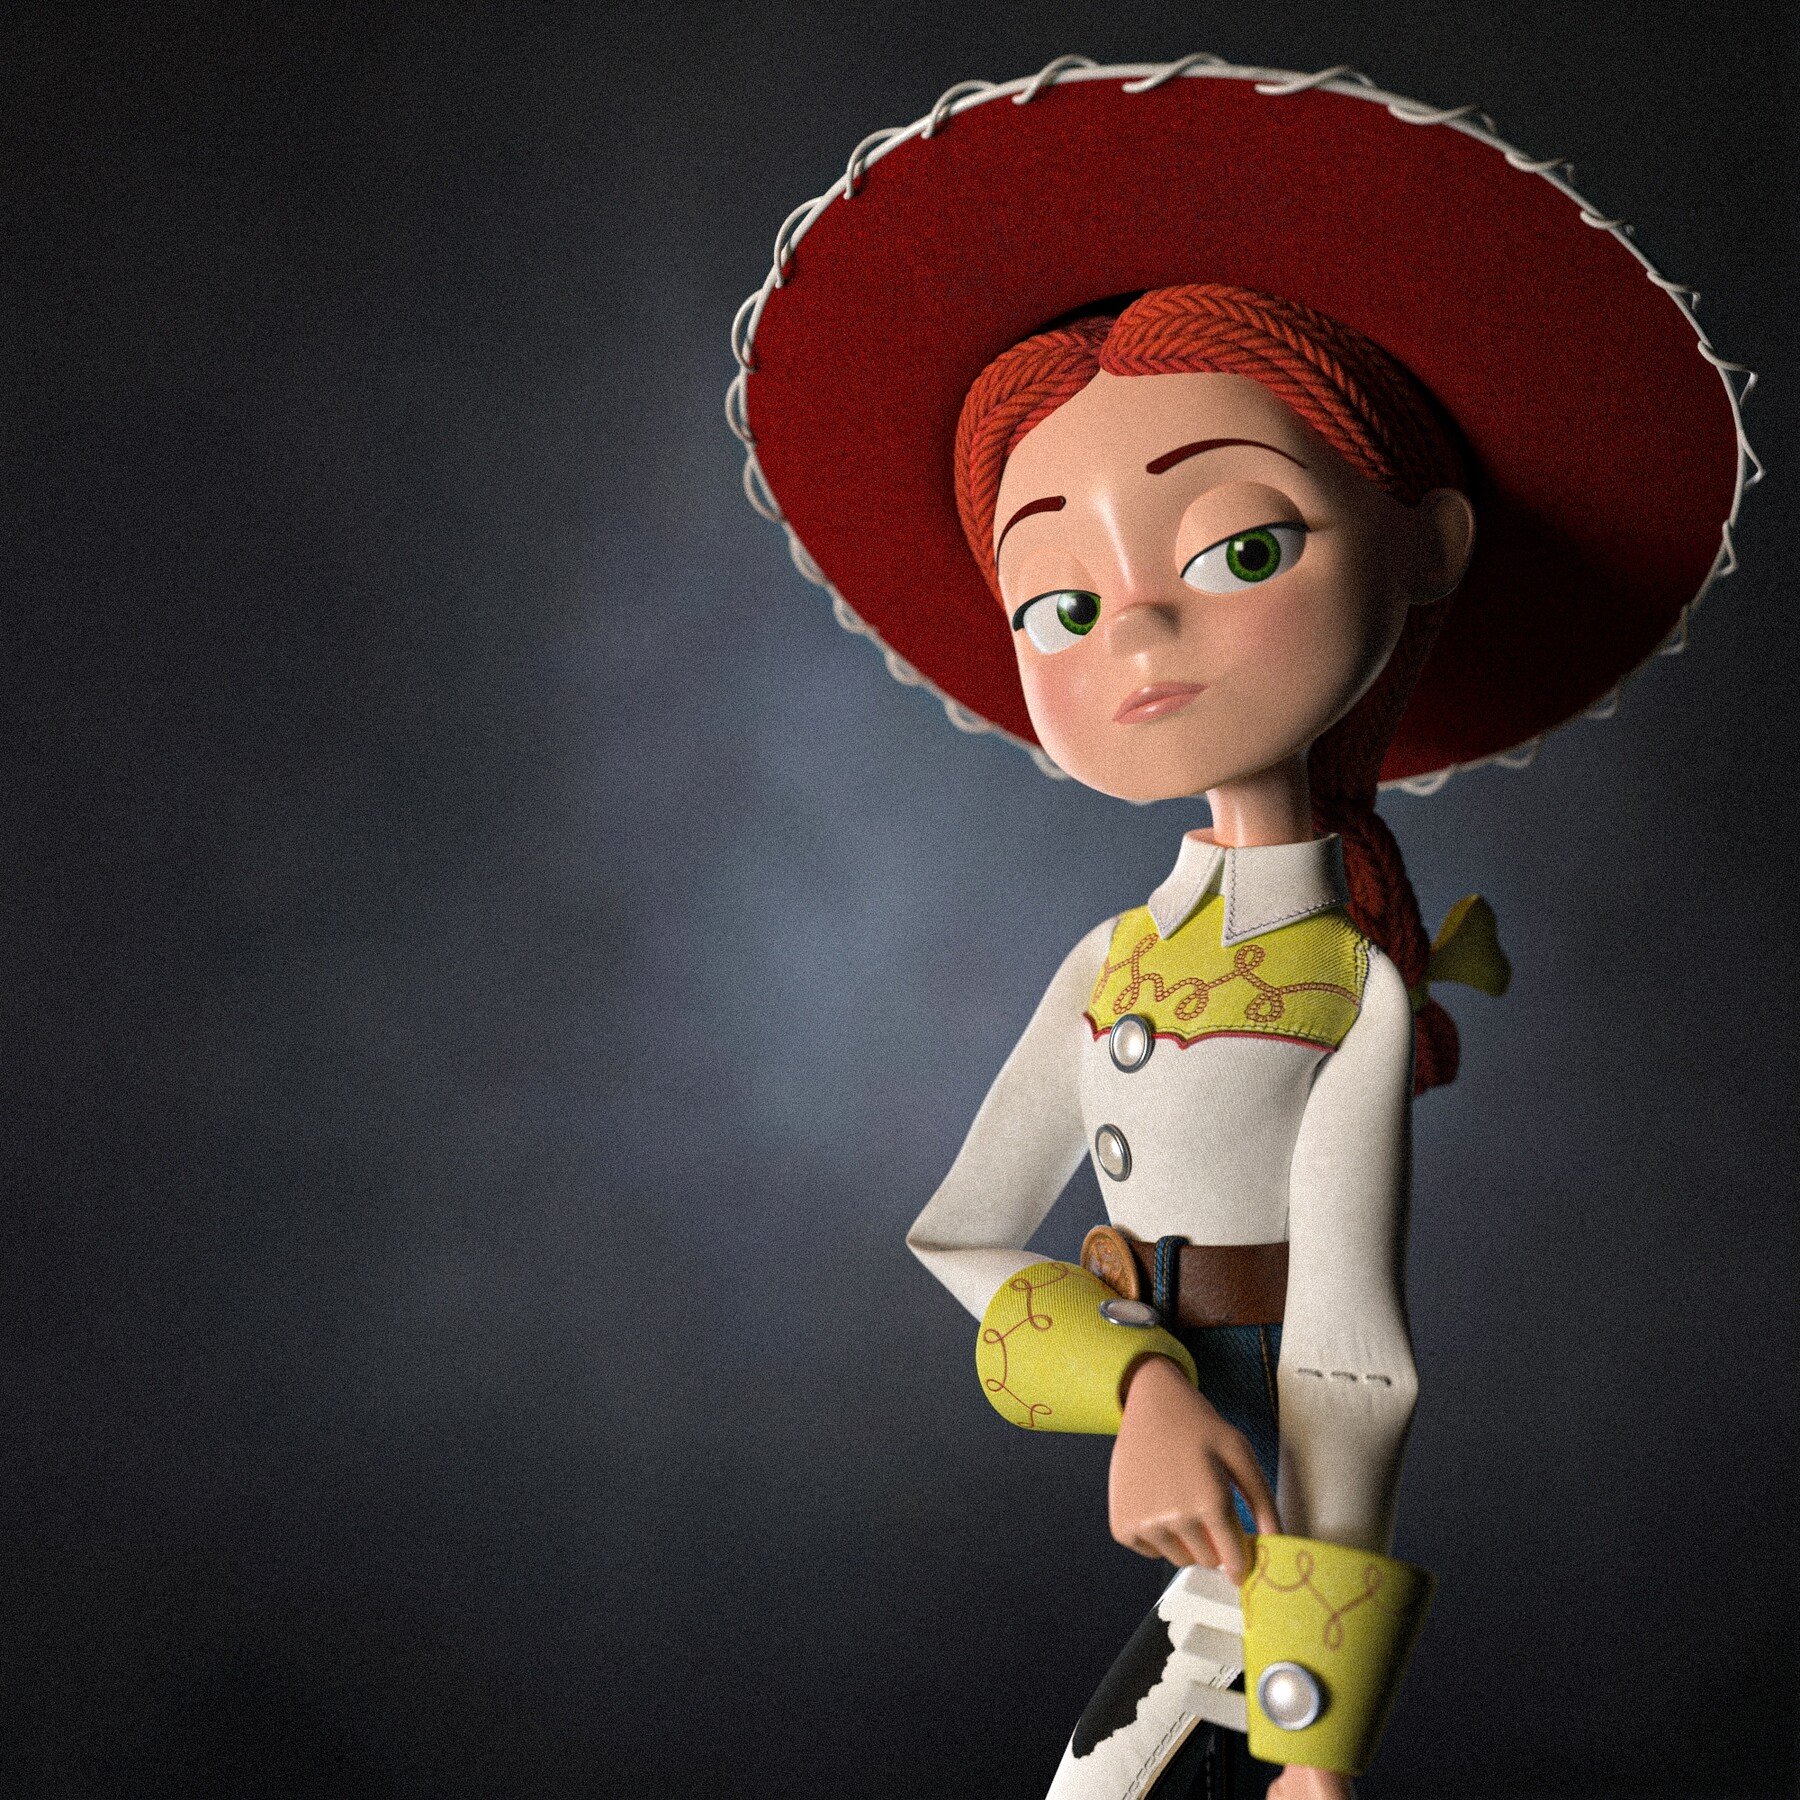 Jessie from Toy Story. 